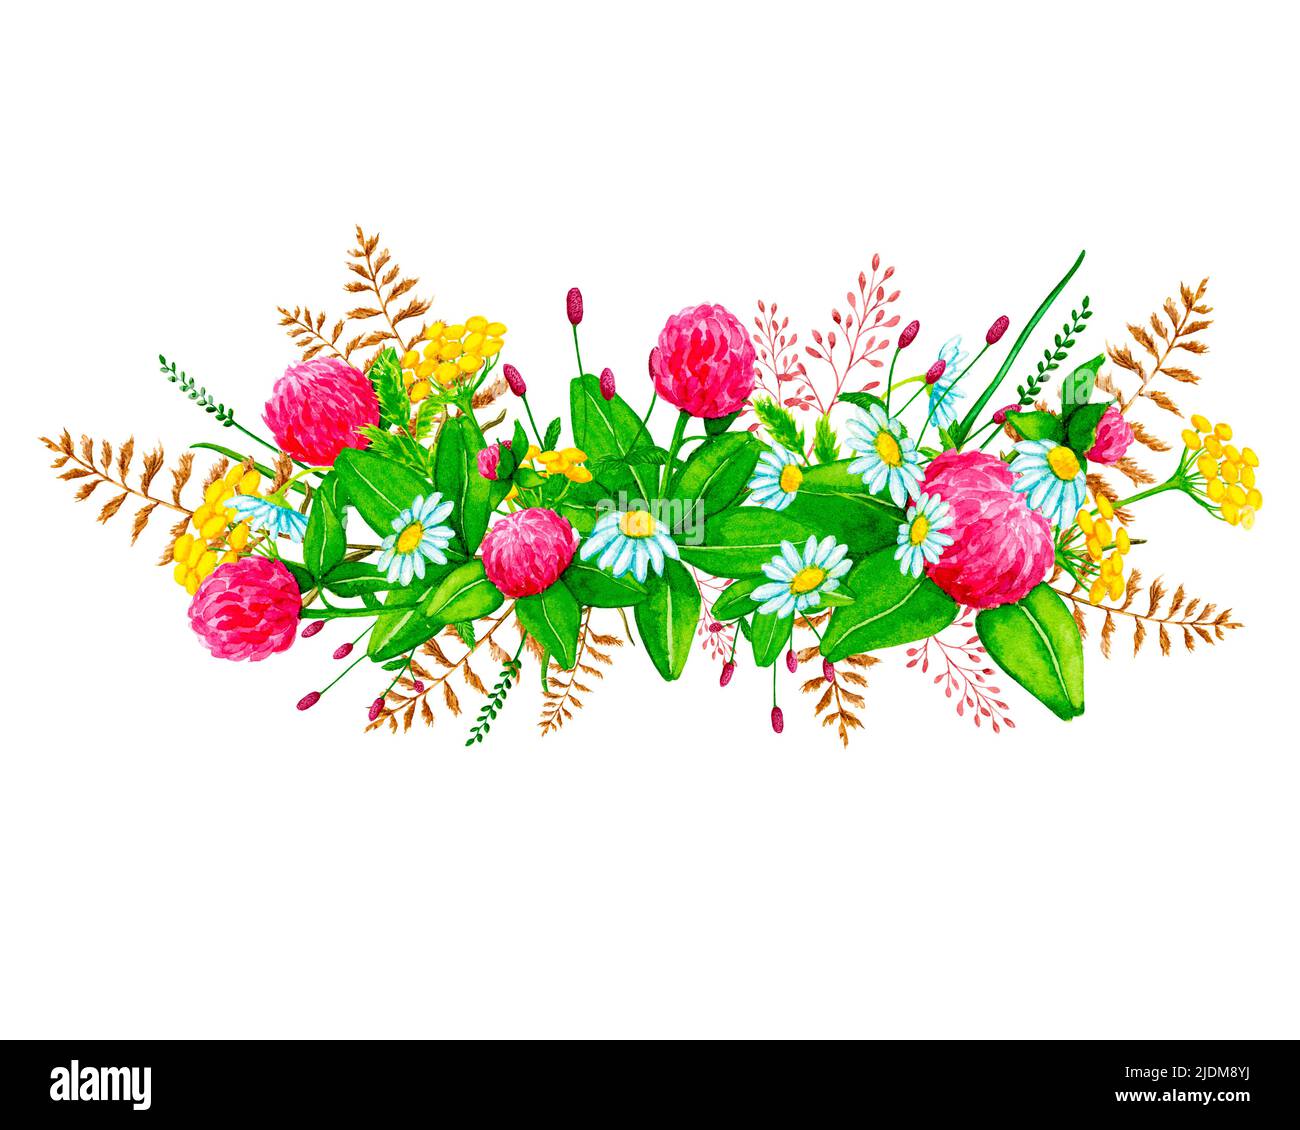 Aquarell-Vignette aus Wildblumen und wilden Kräutern. Handgezeichneter Clipart mit Aquarellfarben. Gestaltungselement für Karten, Einladungen, Poster, Stoffdrucke. Stockfoto